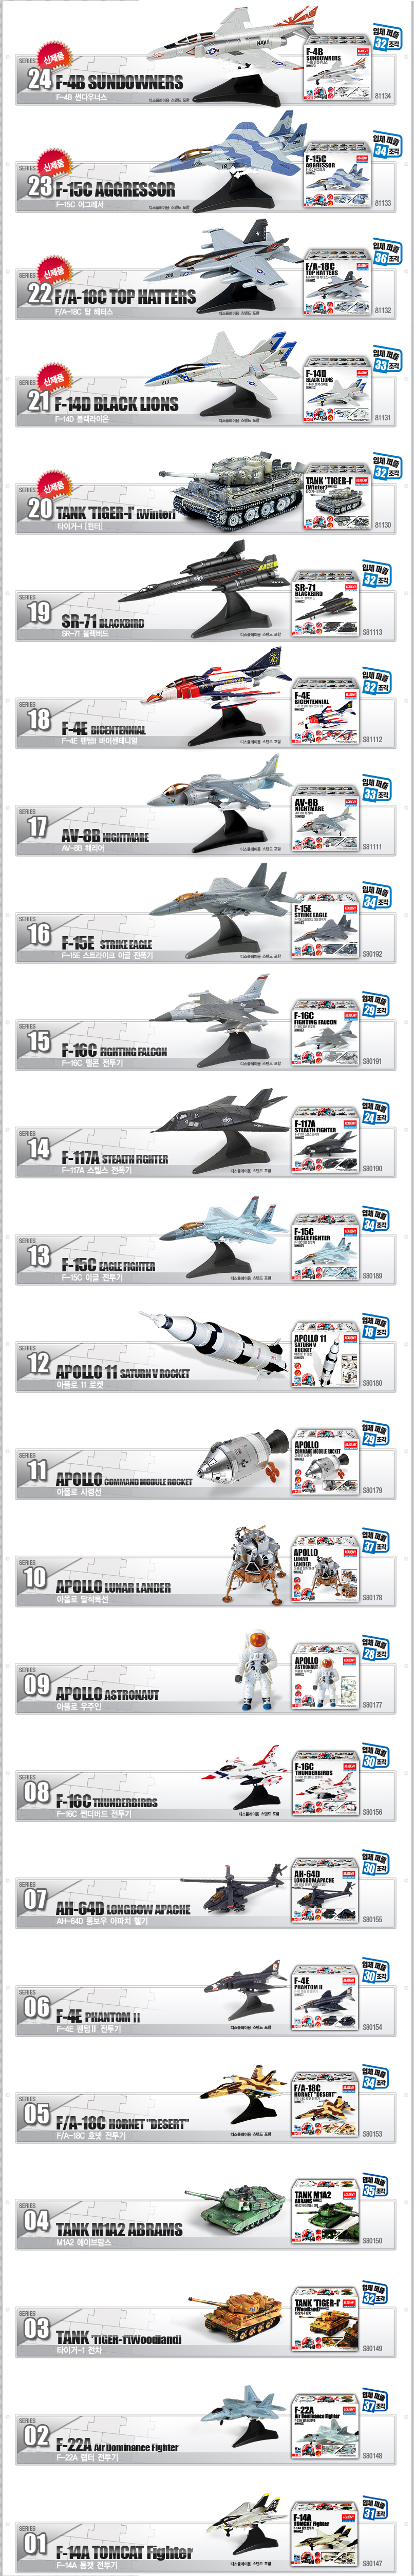 4D퍼즐 15 F-16C 파이팅 팰콘 전투기 21,250원 - 프로메딕 키덜트/취미, 프라모델, 비행기/배 프라모델, 비행기 프라모델 바보사랑 4D퍼즐 15 F-16C 파이팅 팰콘 전투기 21,250원 - 프로메딕 키덜트/취미, 프라모델, 비행기/배 프라모델, 비행기 프라모델 바보사랑